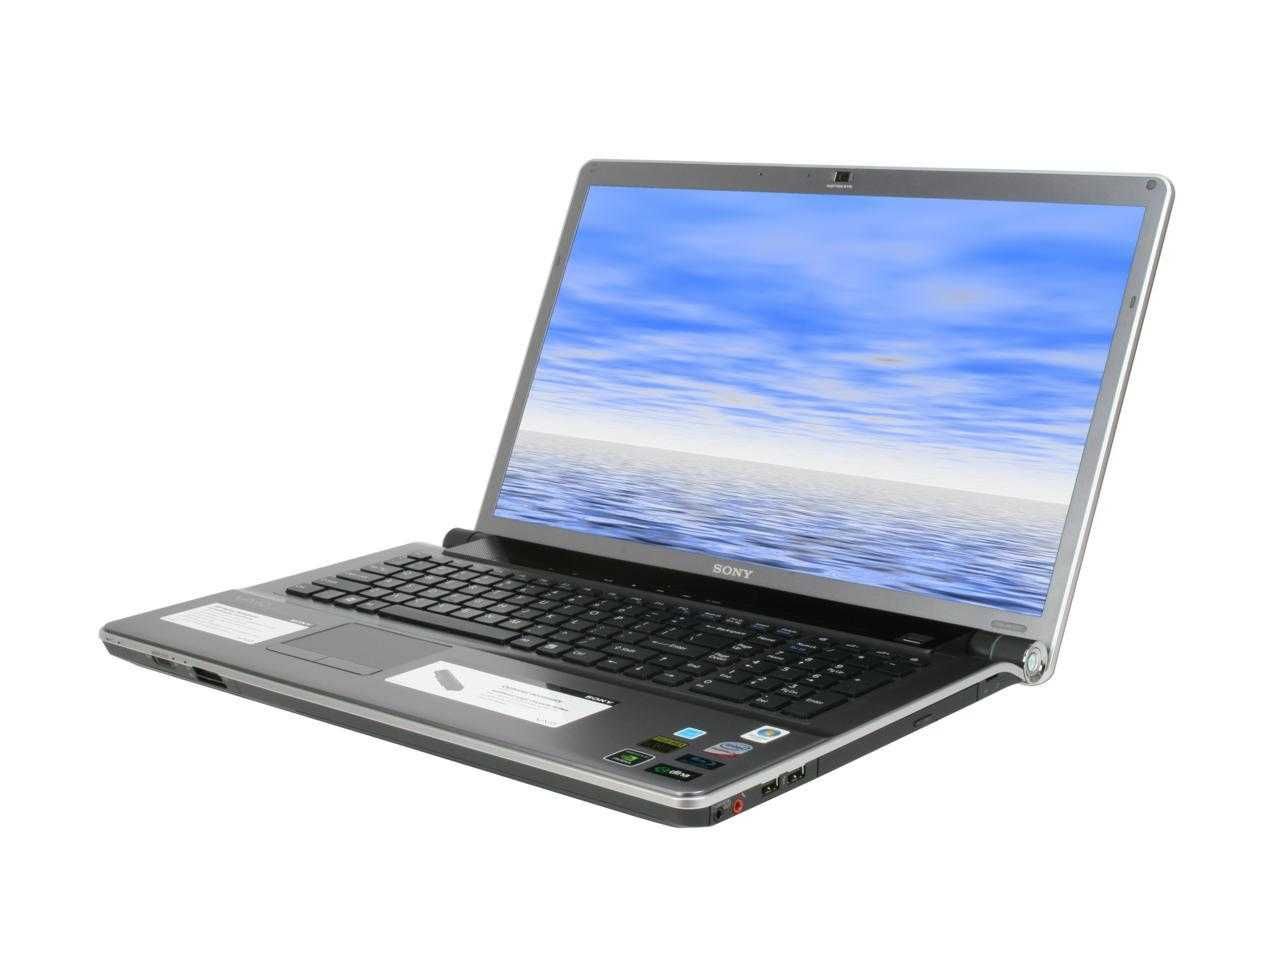 Laptop SONY VAIO AW-120J/H wielki 18.4"